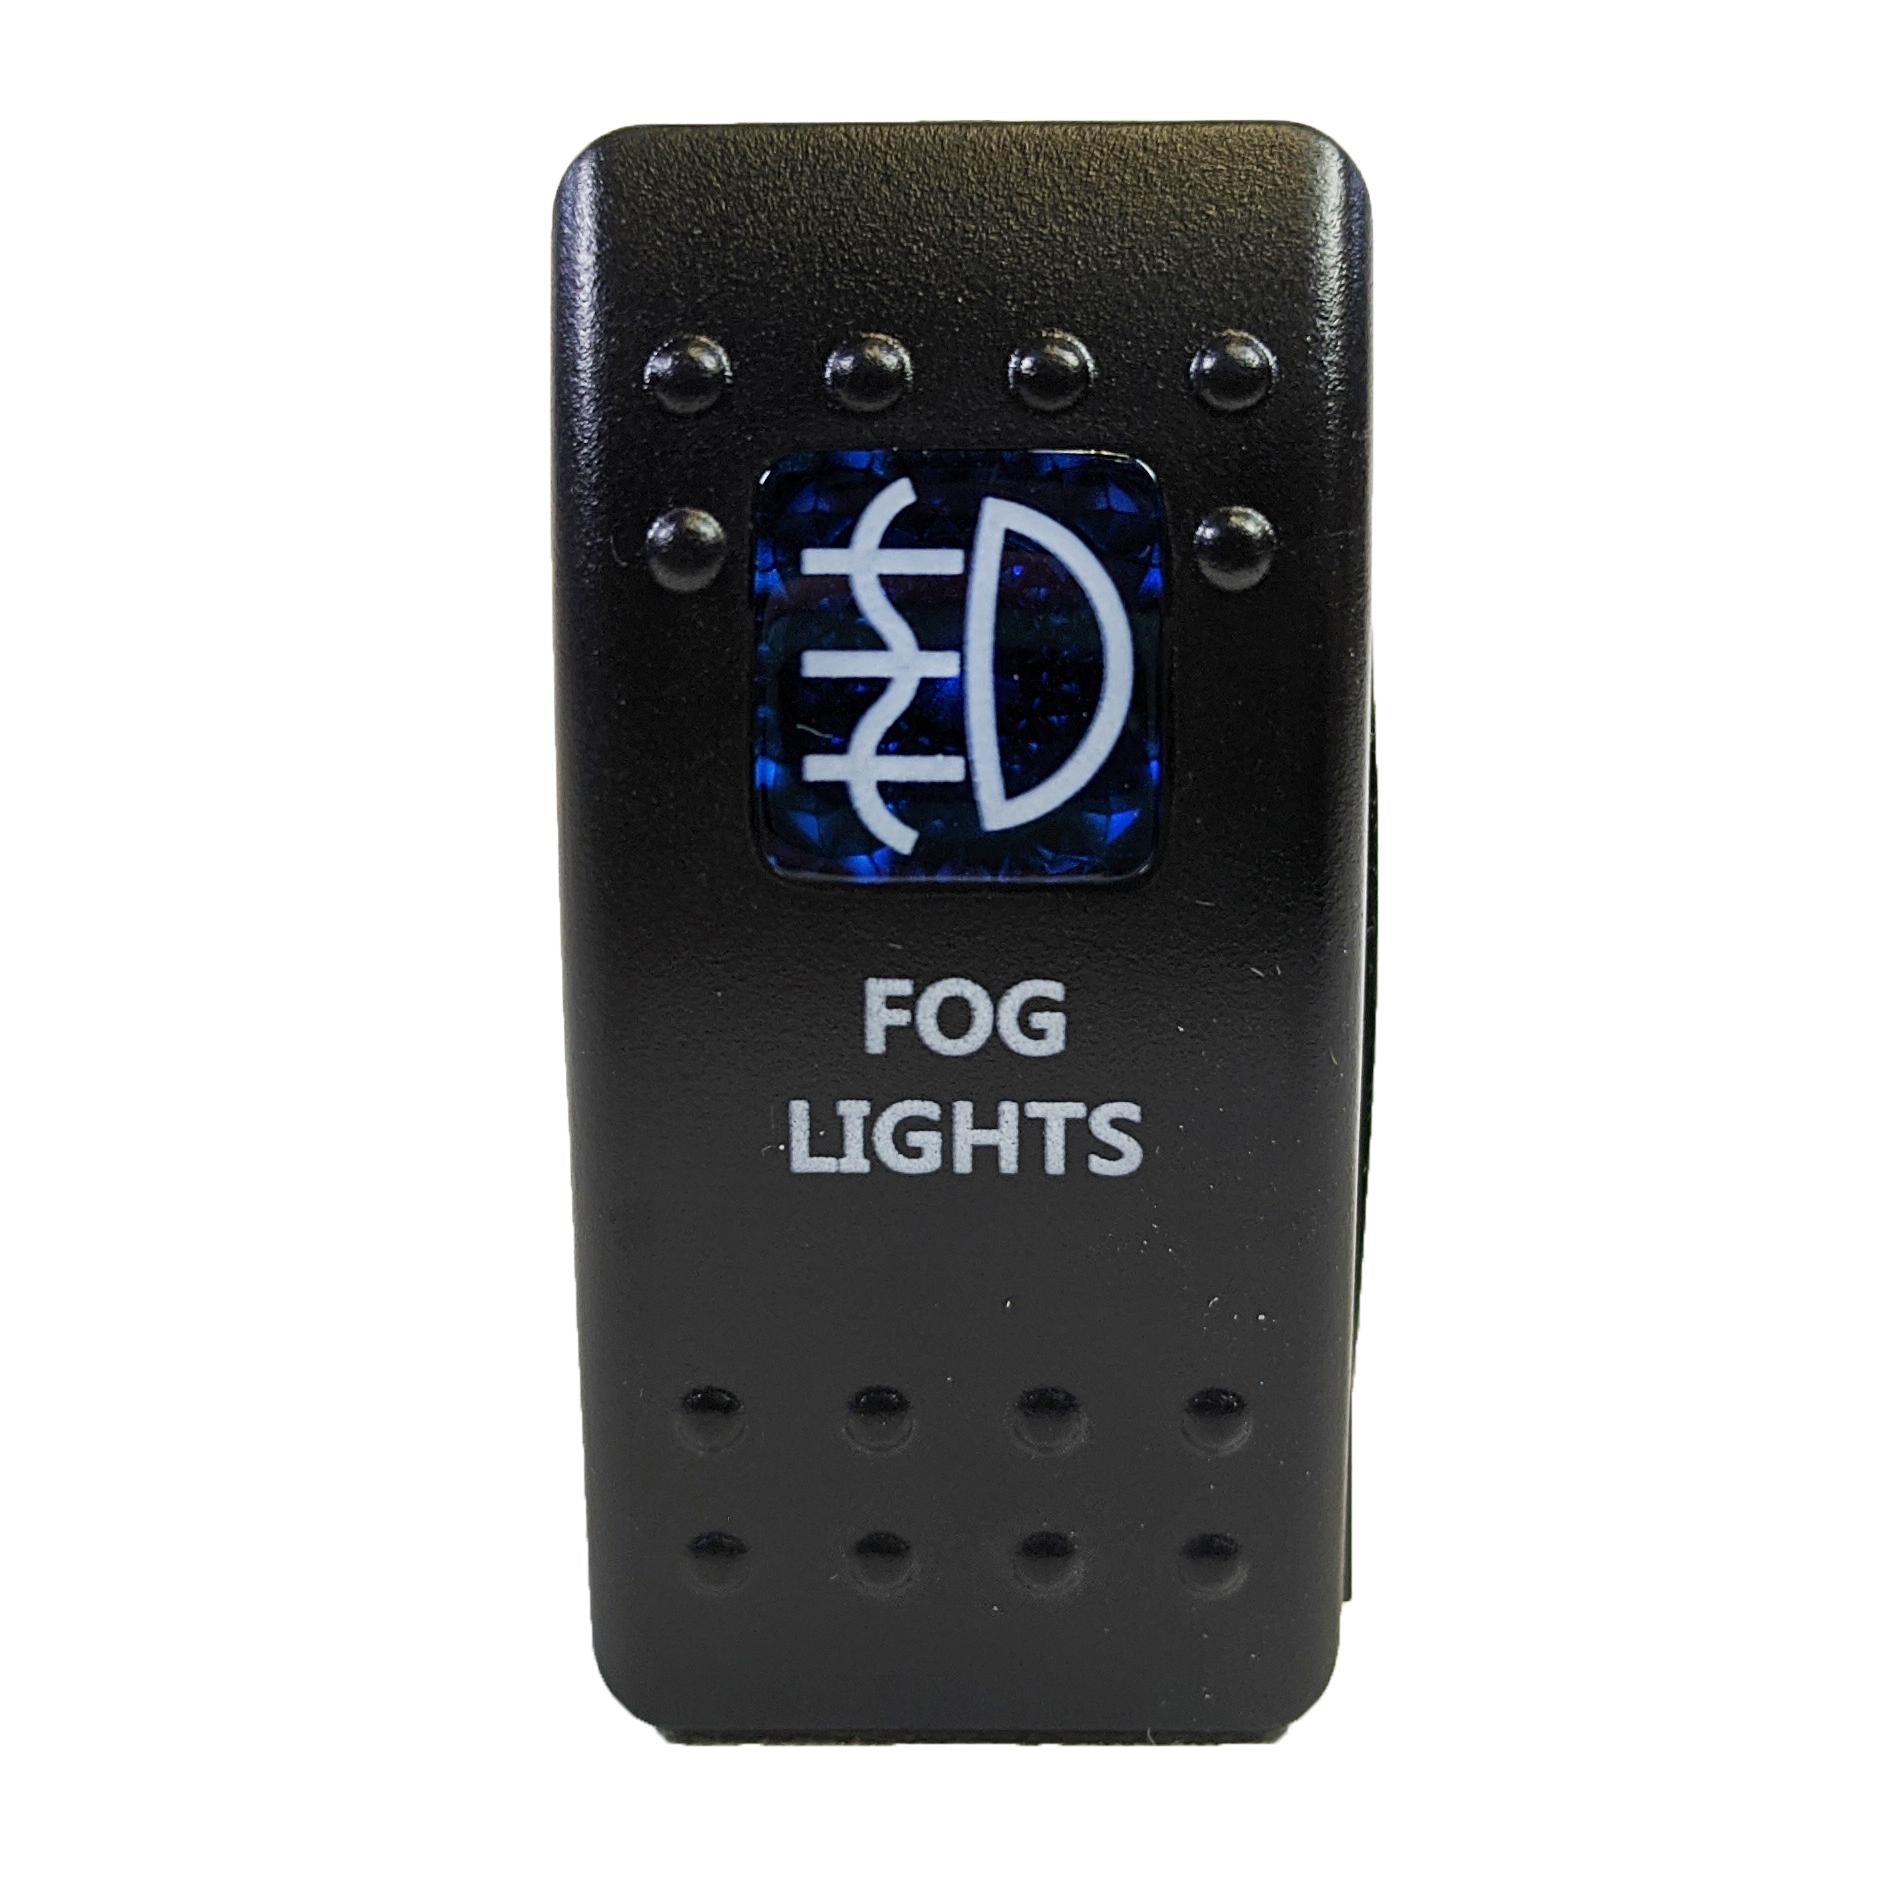 fog light rocker switch for plashlights led lights for marine